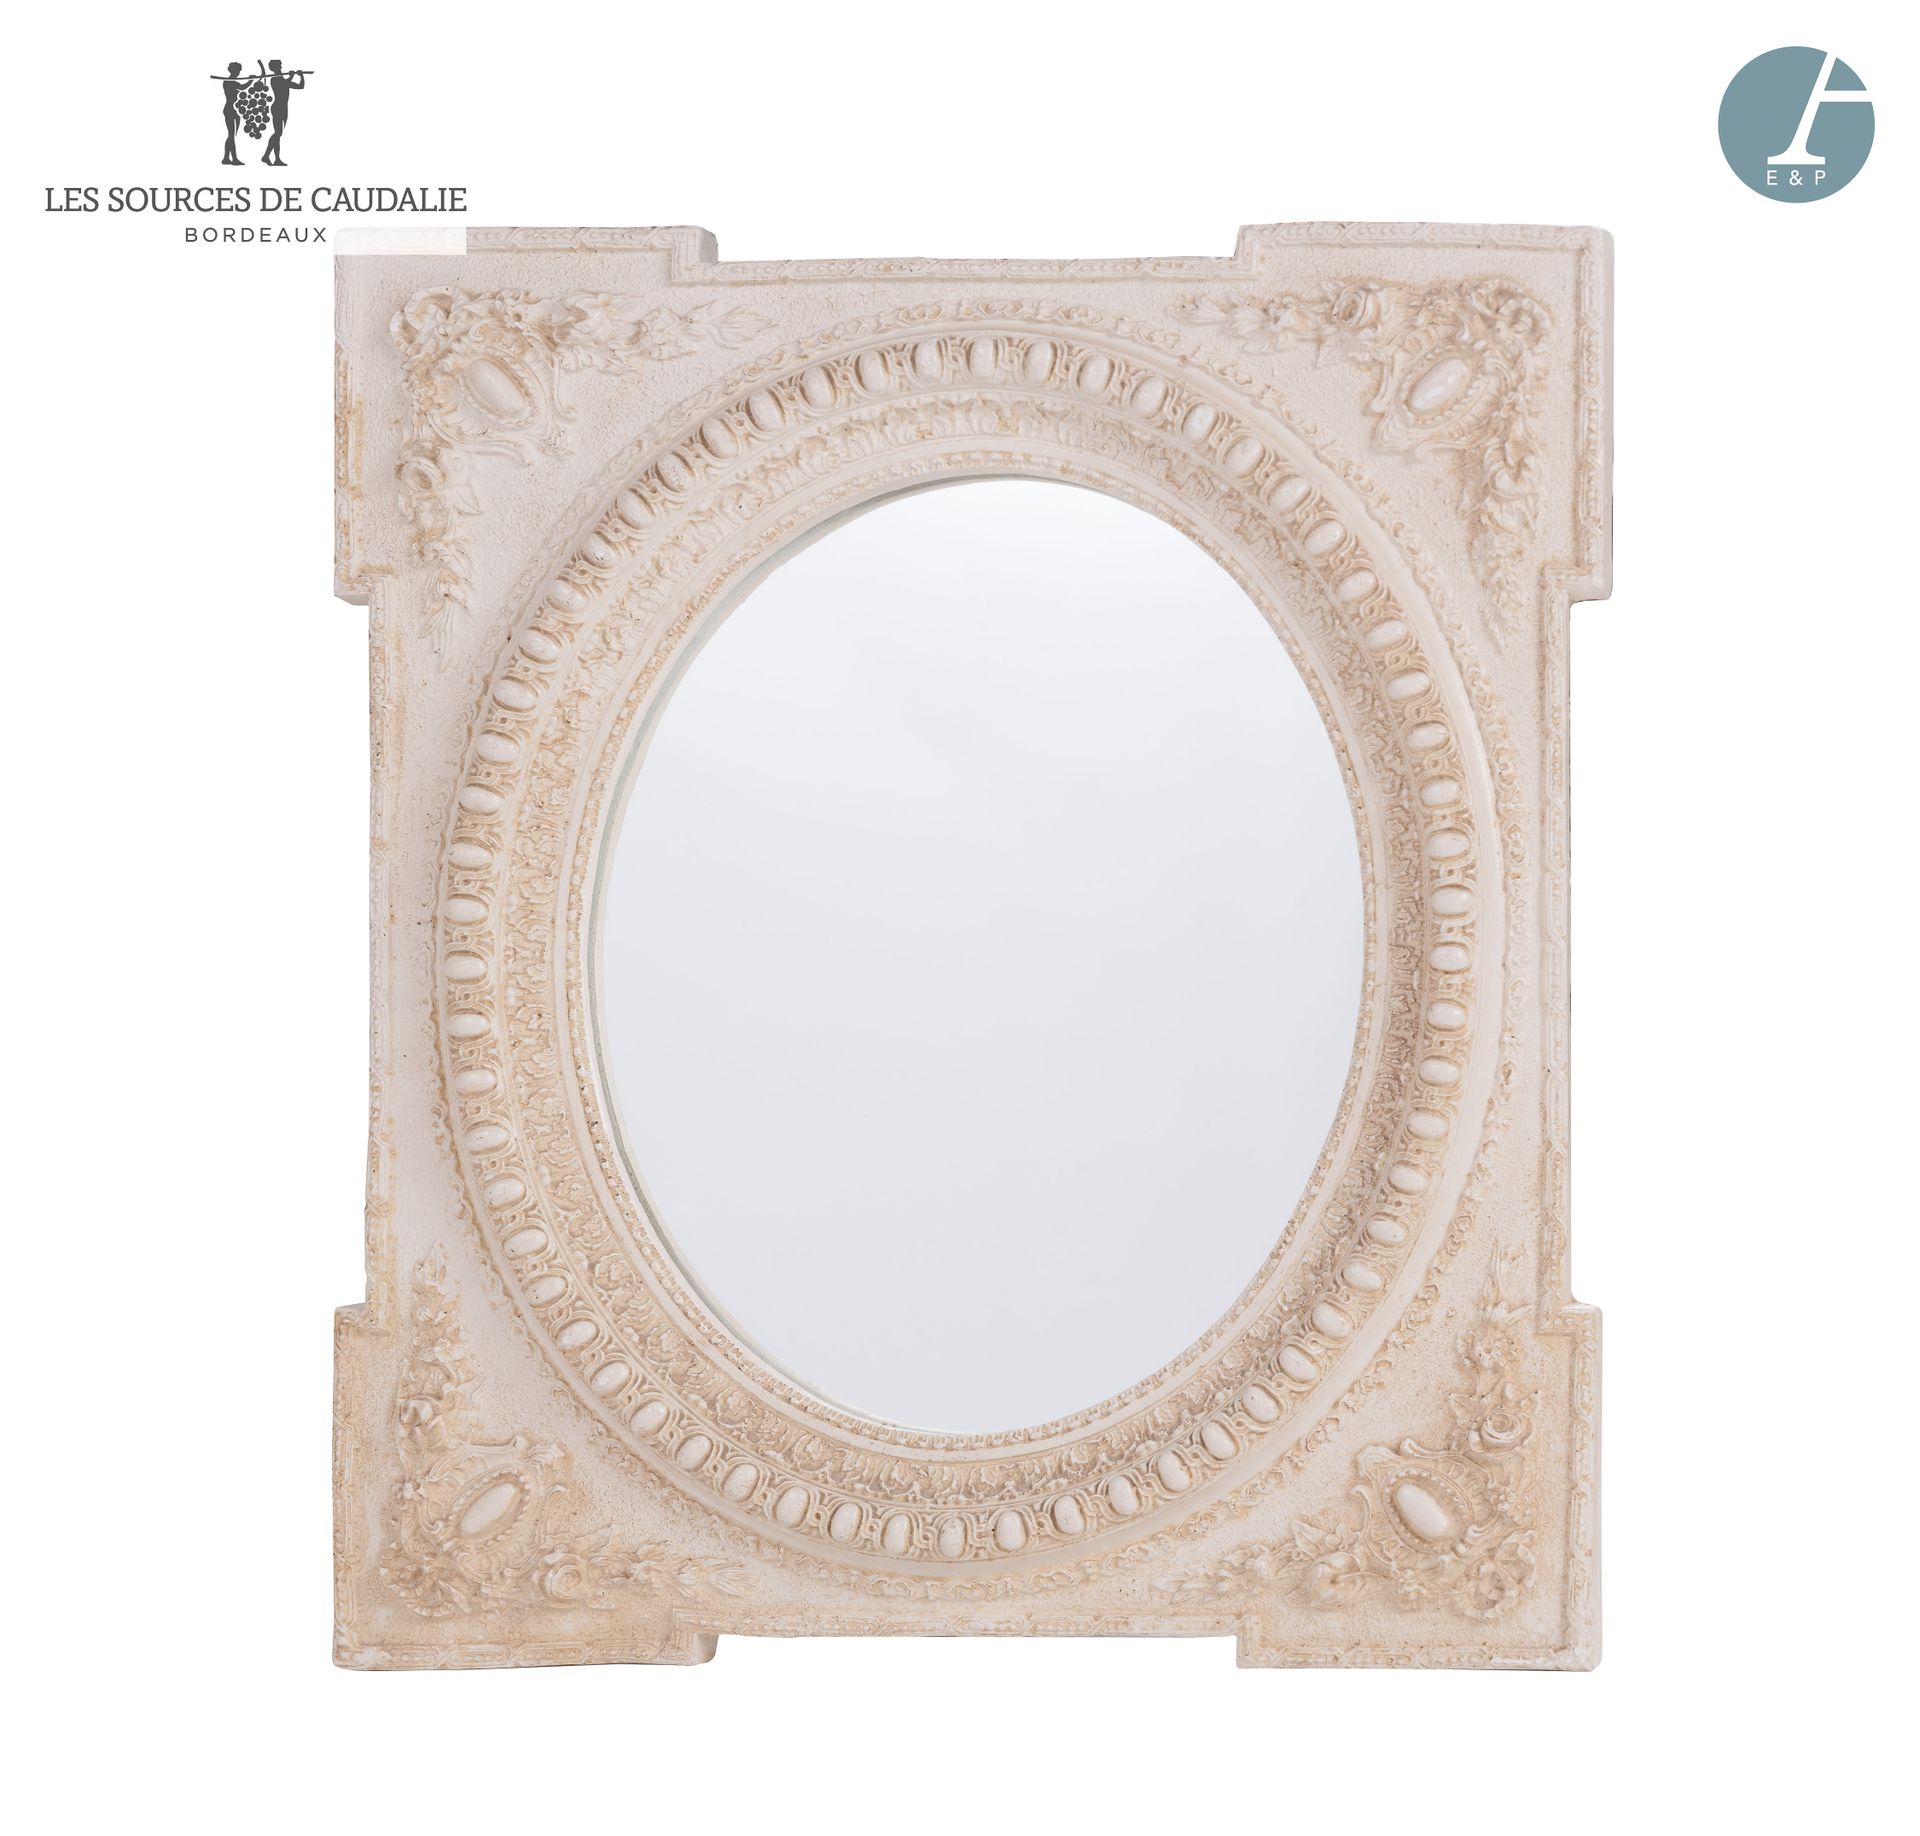 Null 来自 "Le Bon Temps"（Lièvre之家）Sources de Caudalie的24号房间。
椭圆形的模塑石膏镜，带有白色的铜锈。
高：&hellip;